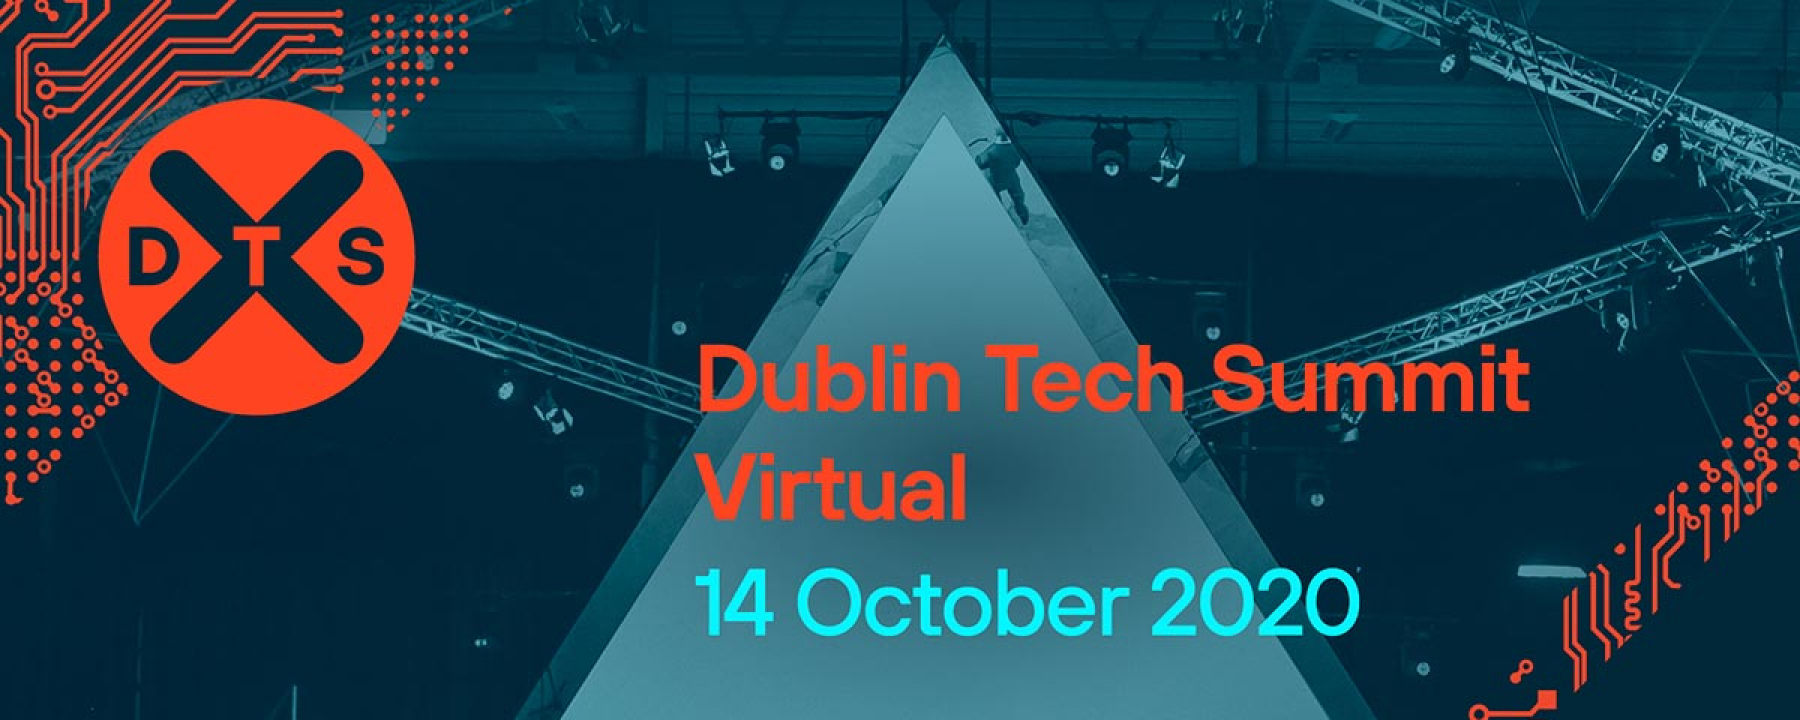 Dublin Tech Summit Virtual, organisé par Dublin Tech Summit 